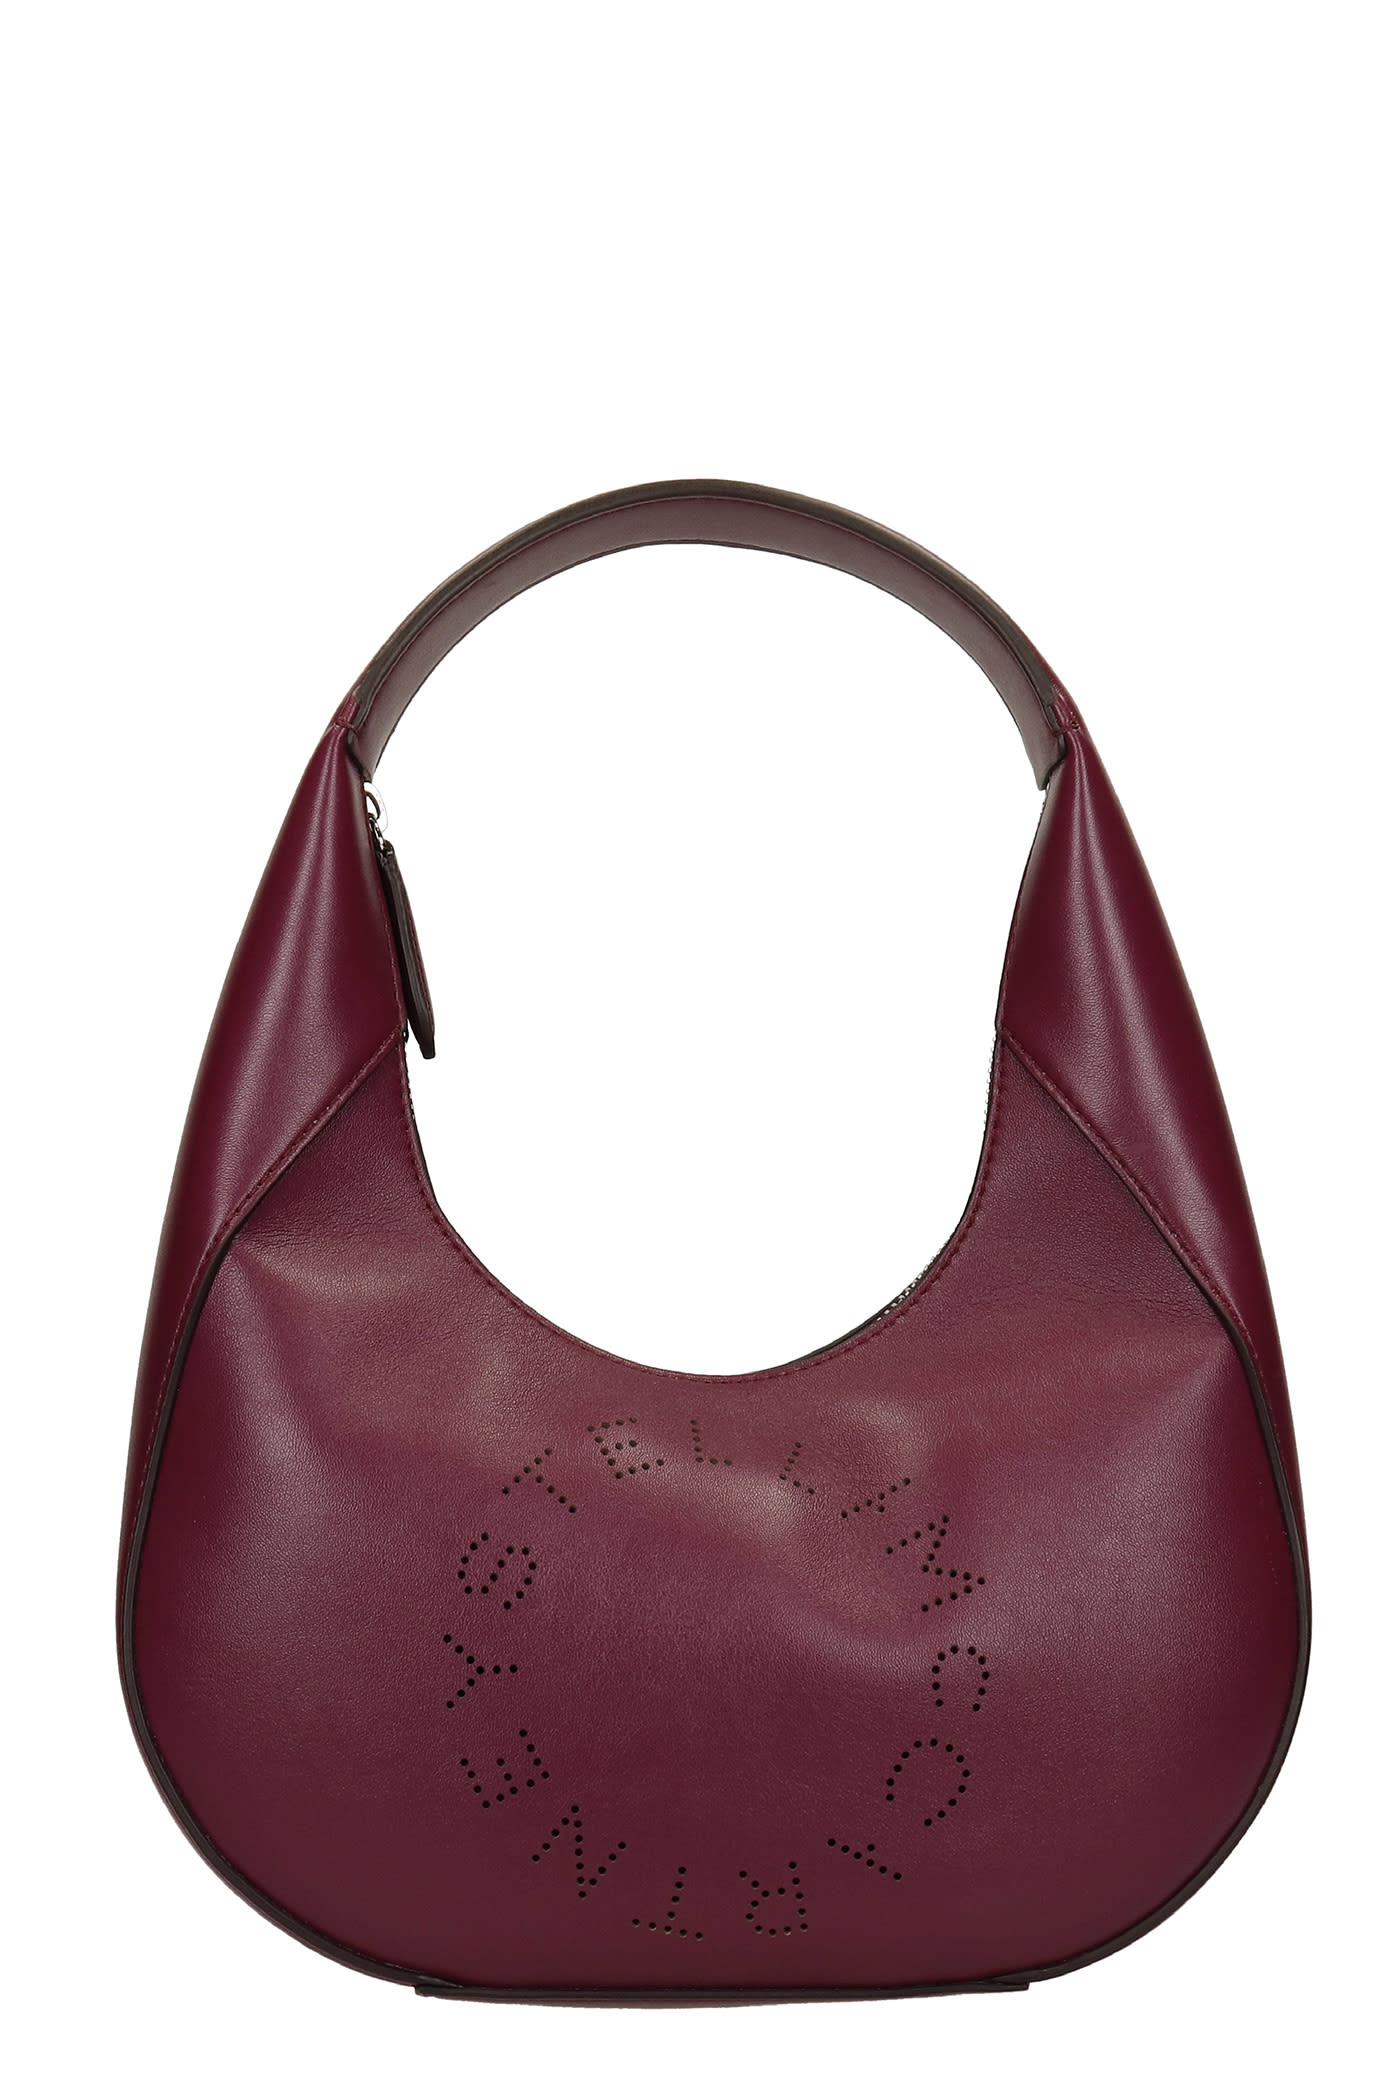 Stella McCartney Shoulder Bag In Viola Faux Leather